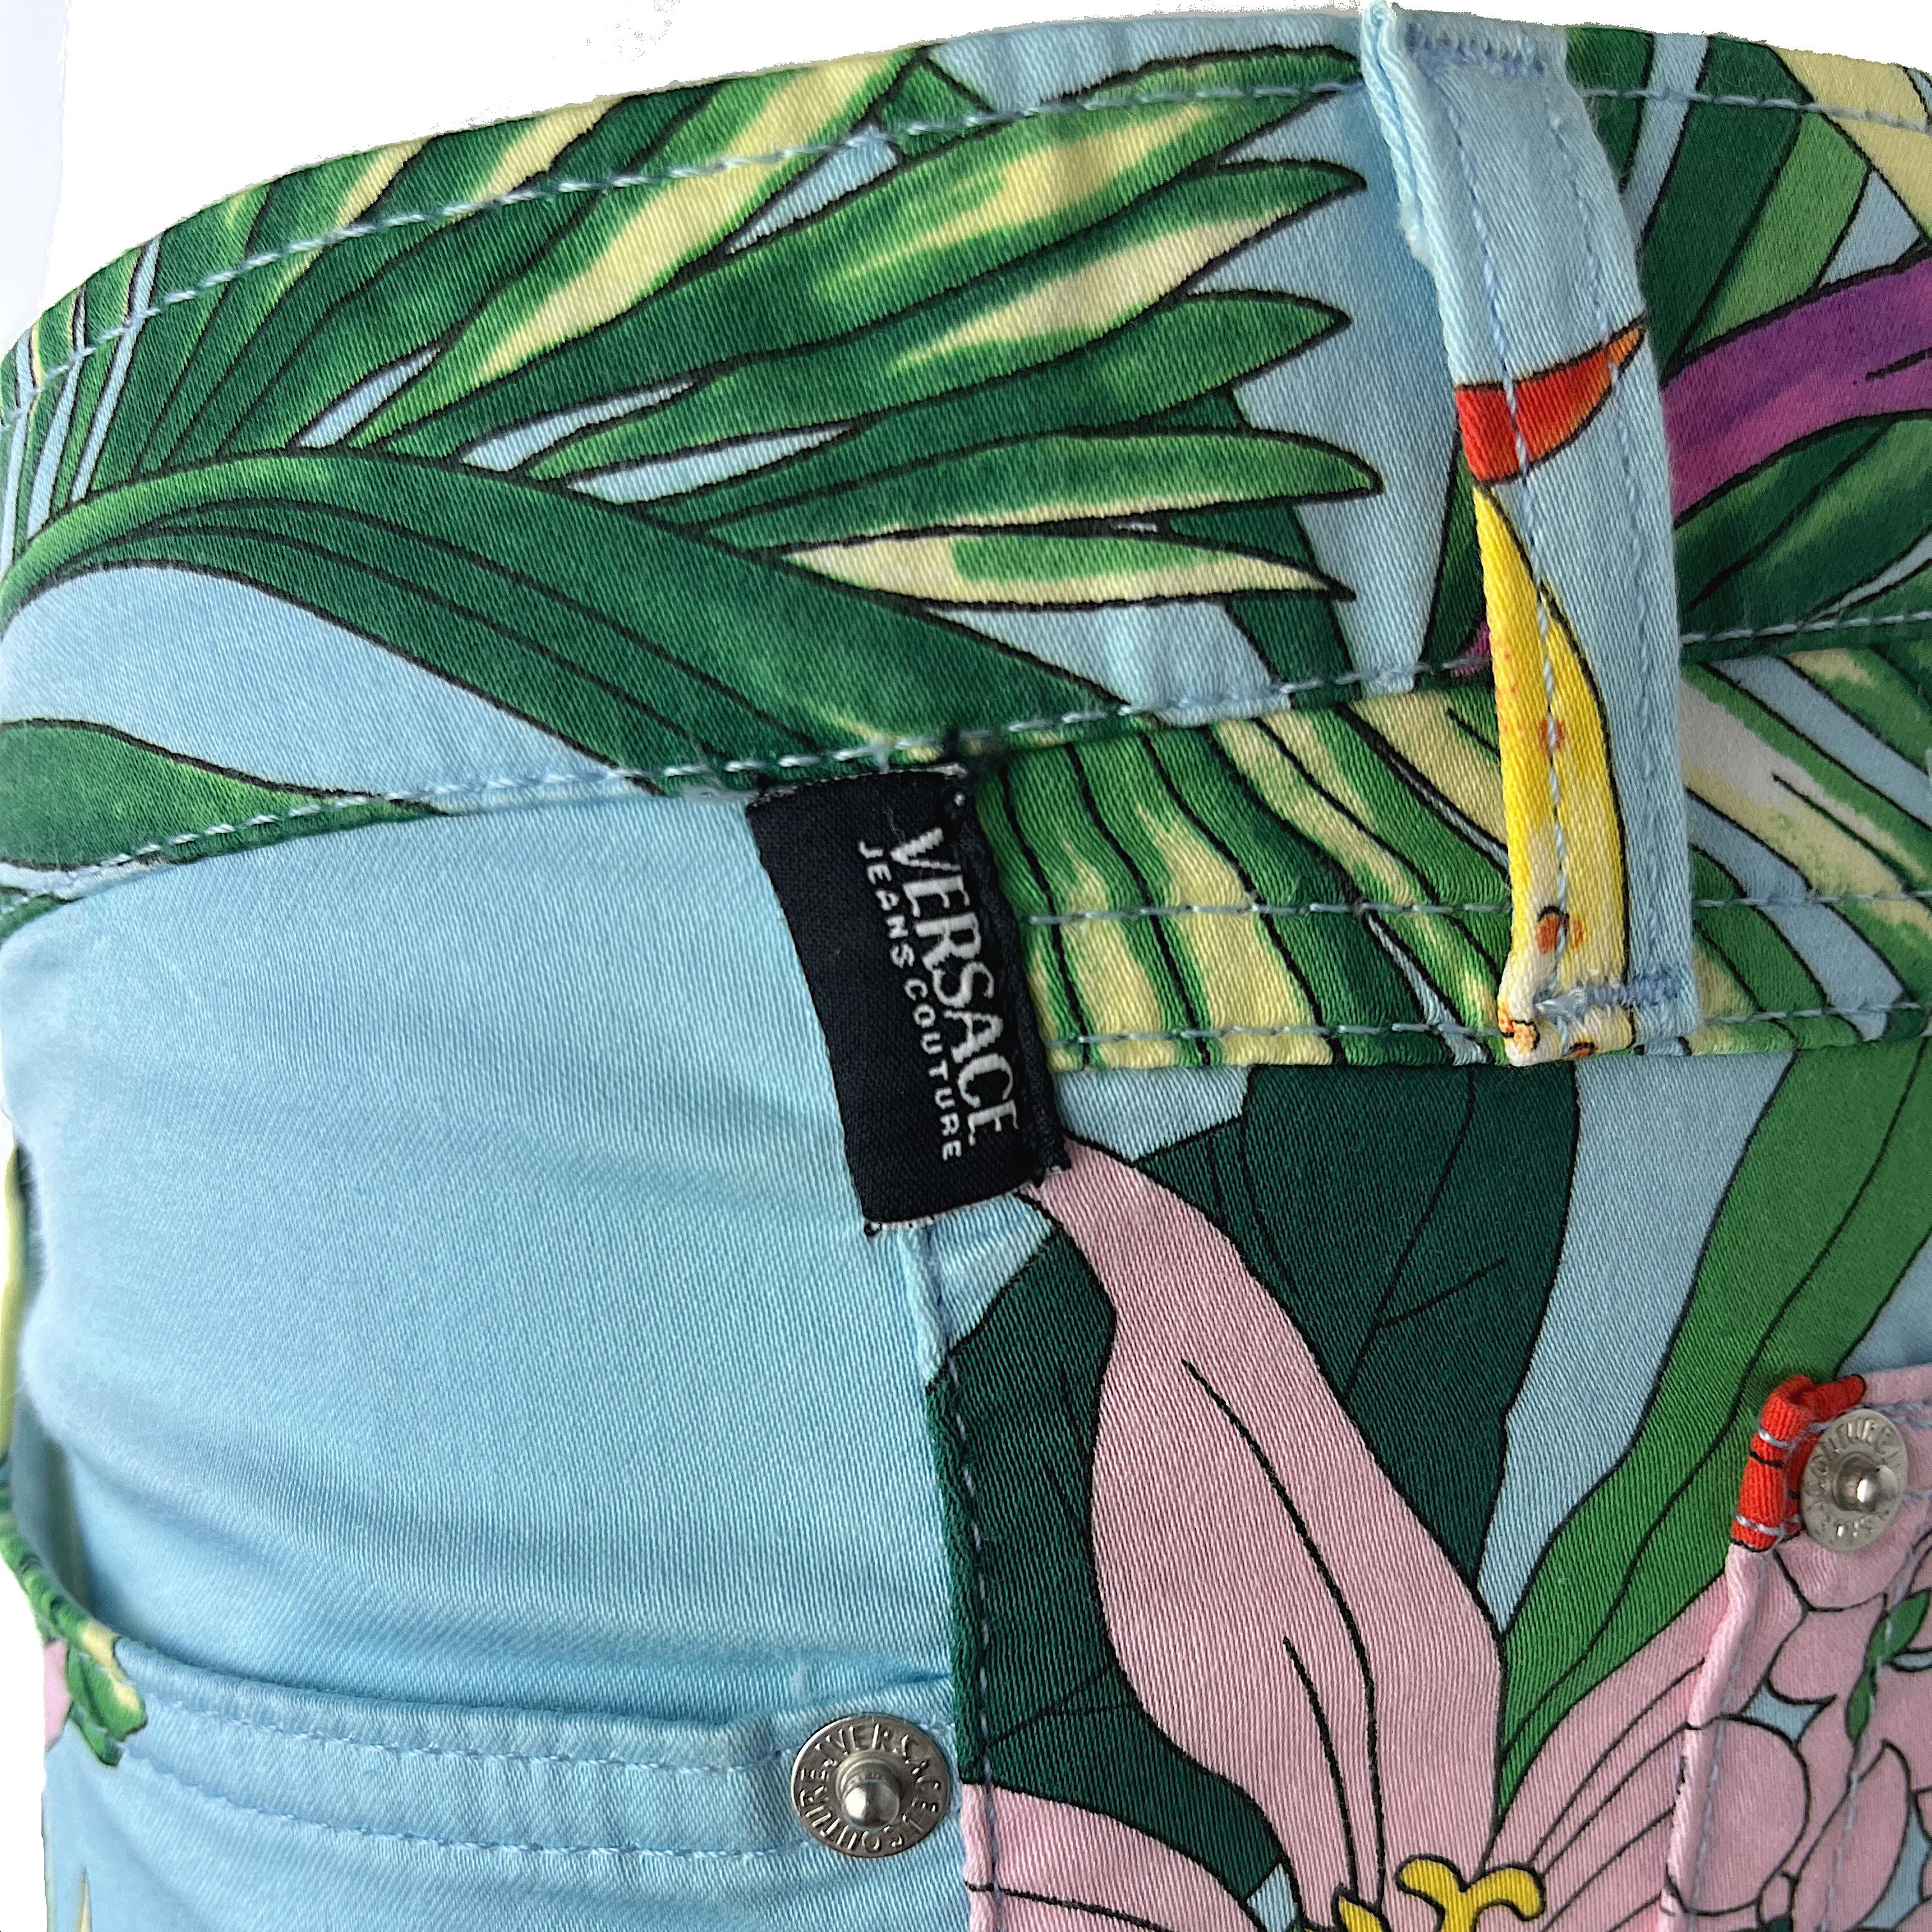 VERSACE JEANS COUTURE – Capri Pants with Tropical Floral Print  Size 6US 38EU 2